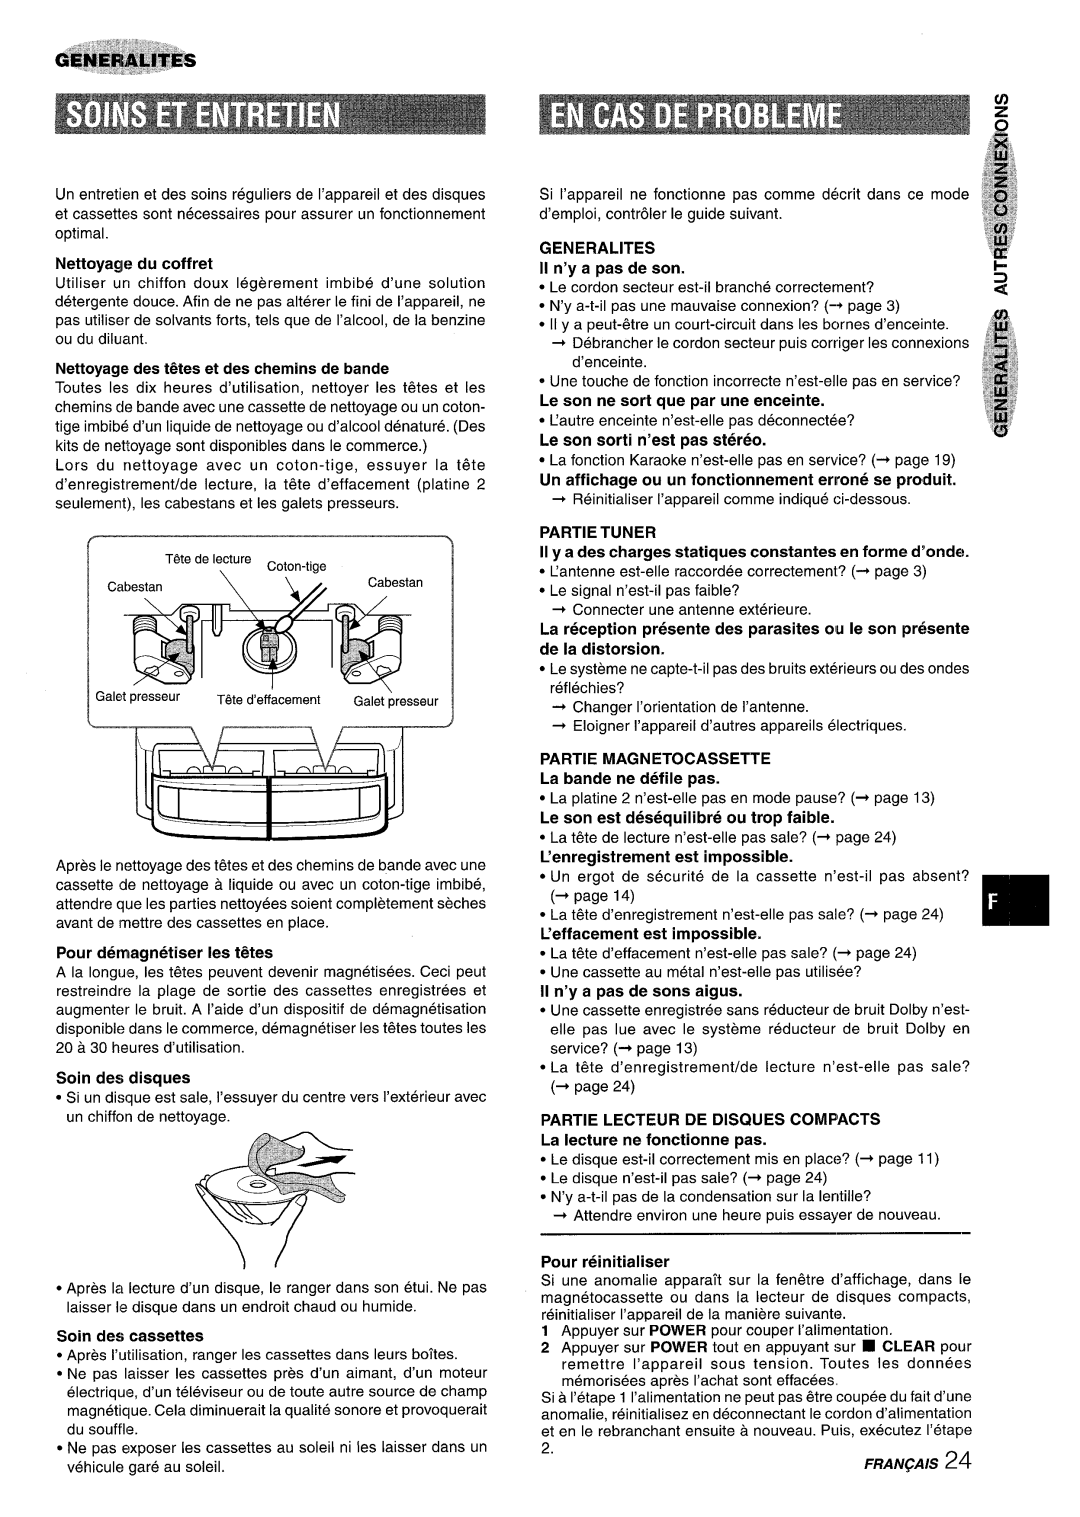 Sony NSX-A959 manual Nettoyagle du coffret, Nettoyage des t~tes et des chemins de bande, Pour demagnetiser Ies t~tes 